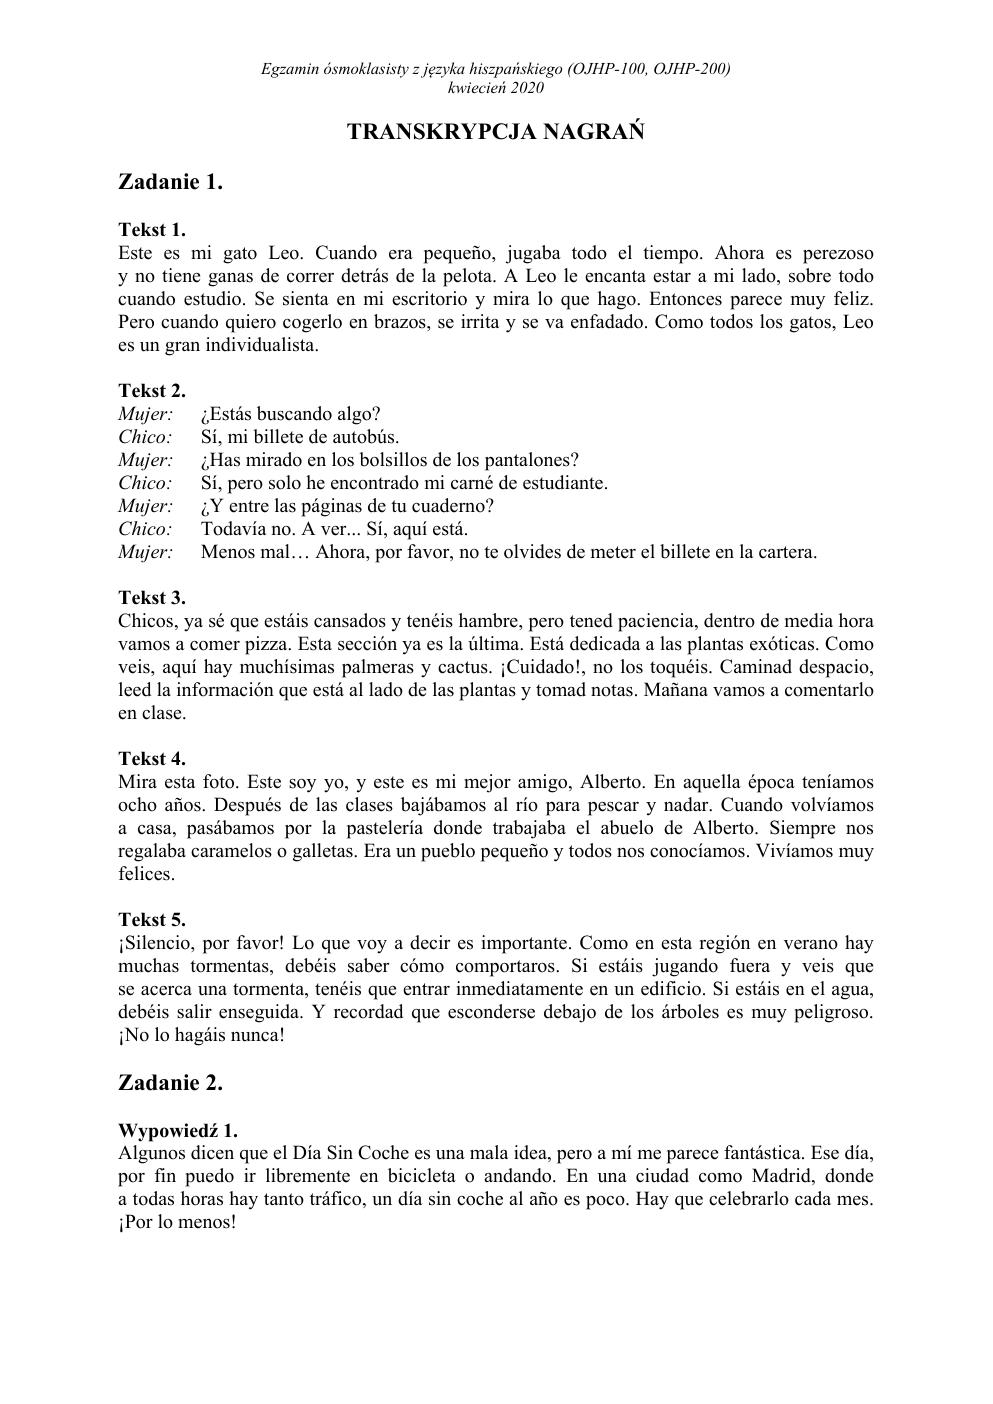 transkrypcja - hiszpański - egzamin ósmoklasisty 2020-1